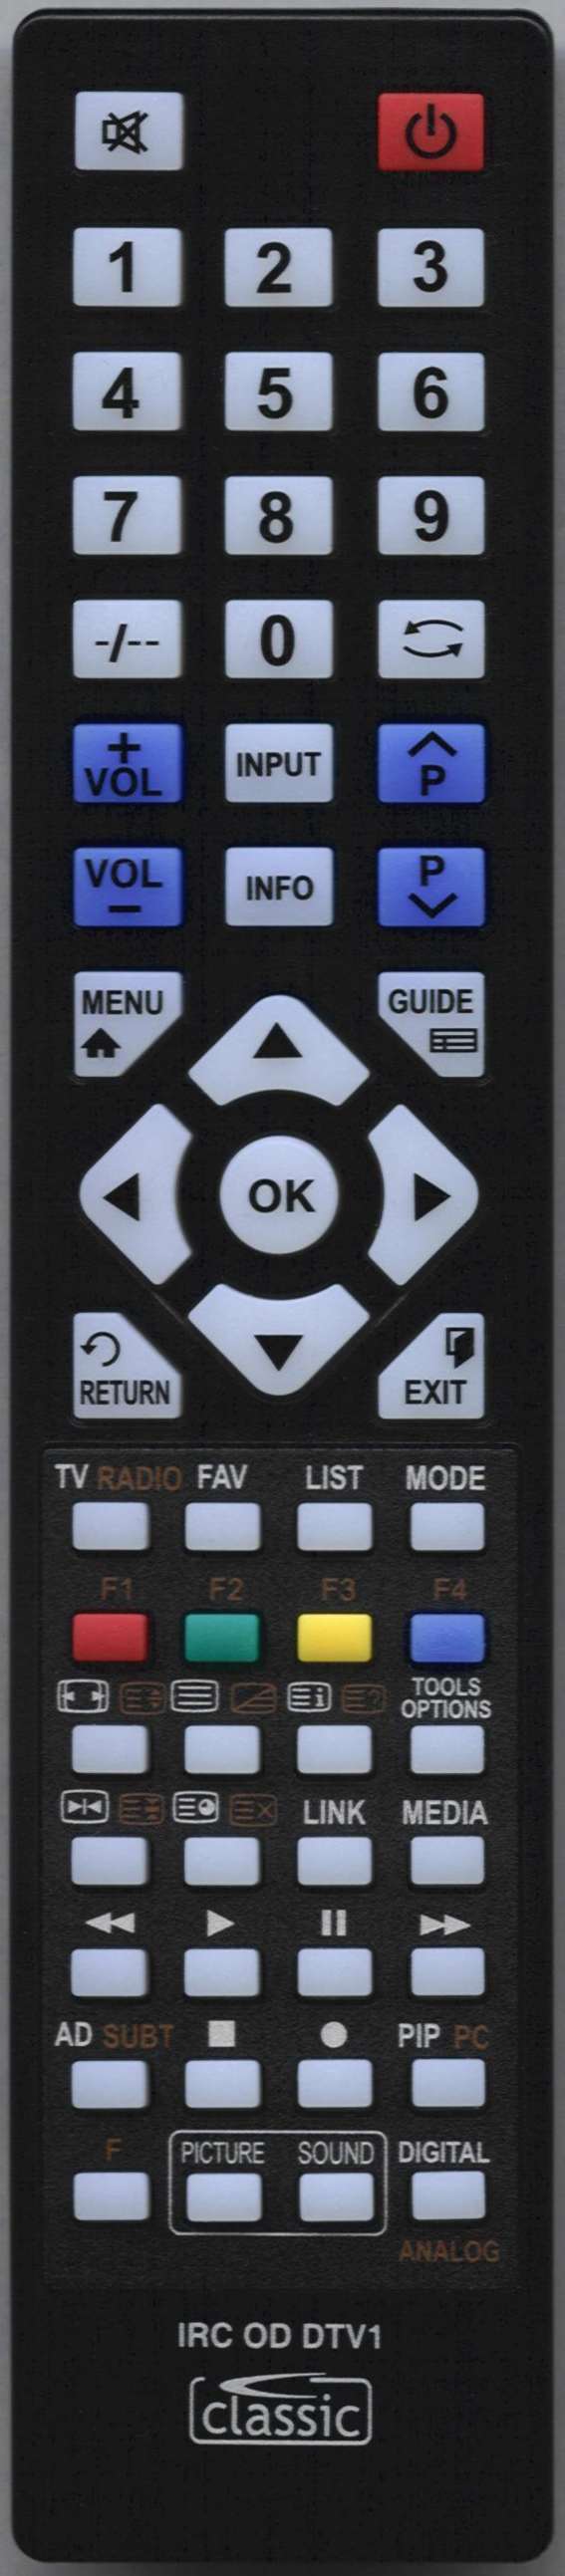 NEON RCL09F Remote Control